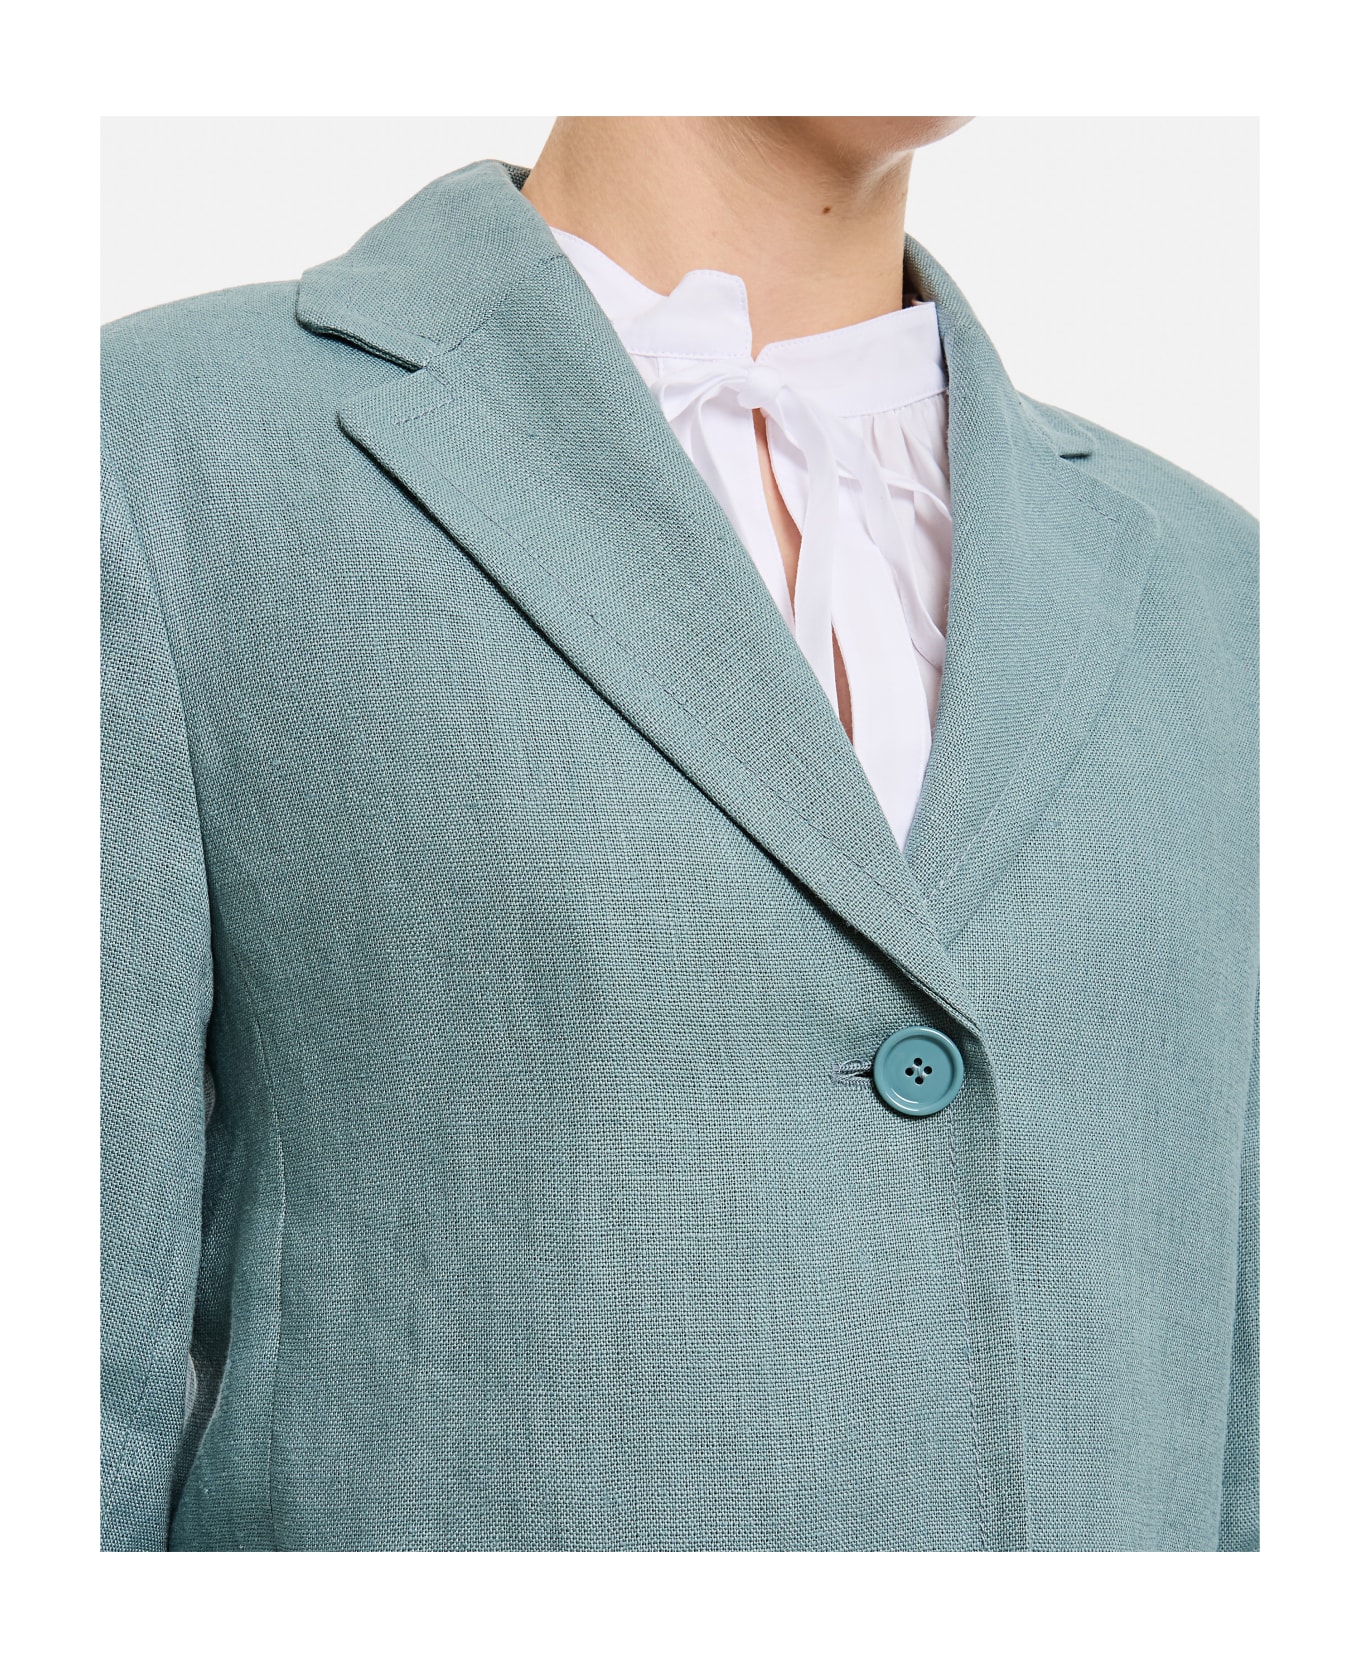 'S Max Mara Socrates Linen Jacket - Clear Blue